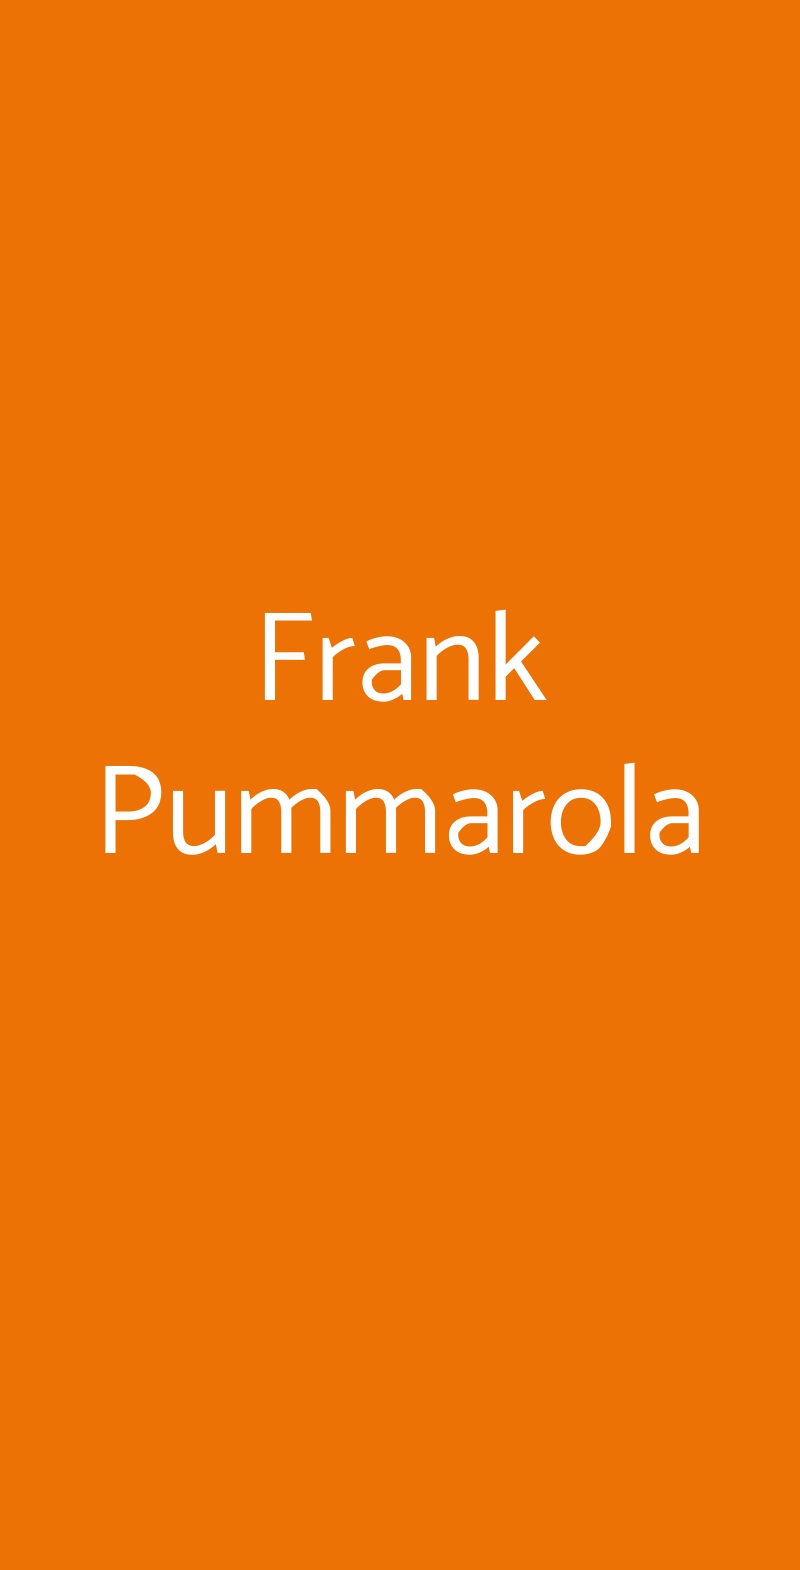 Frank Pummarola Milano menù 1 pagina